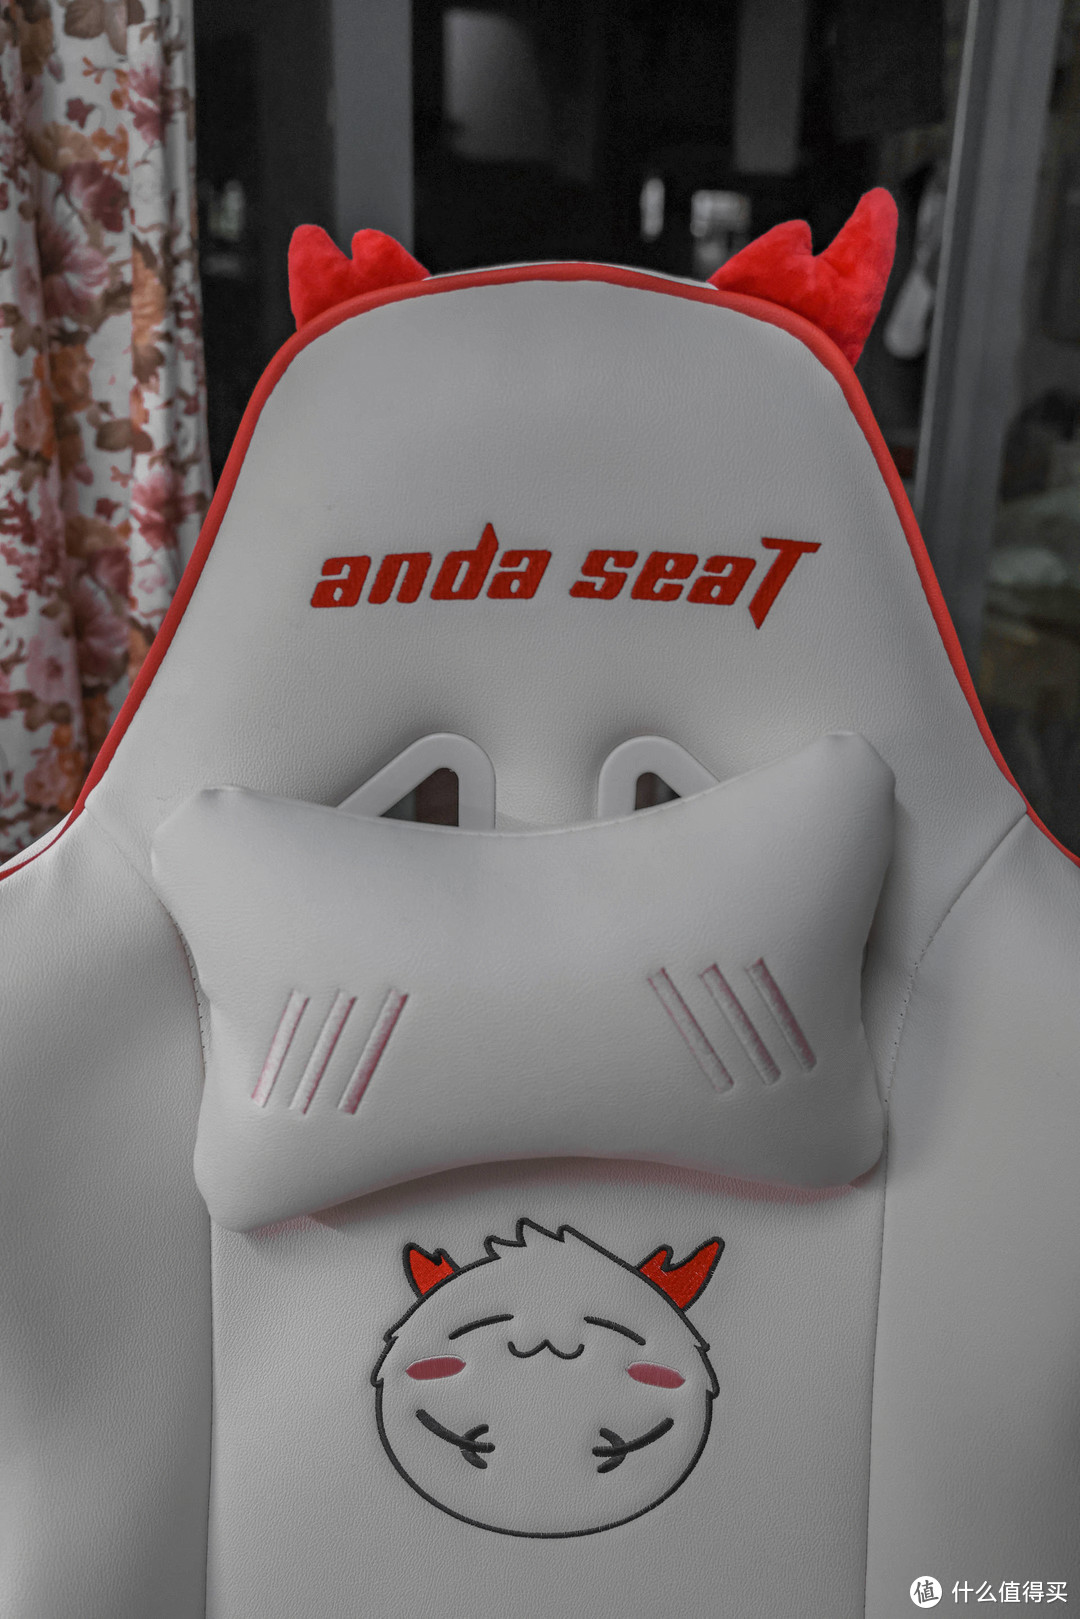 「山姆值得买」这是一款拥有个性化文化符号的电竞椅